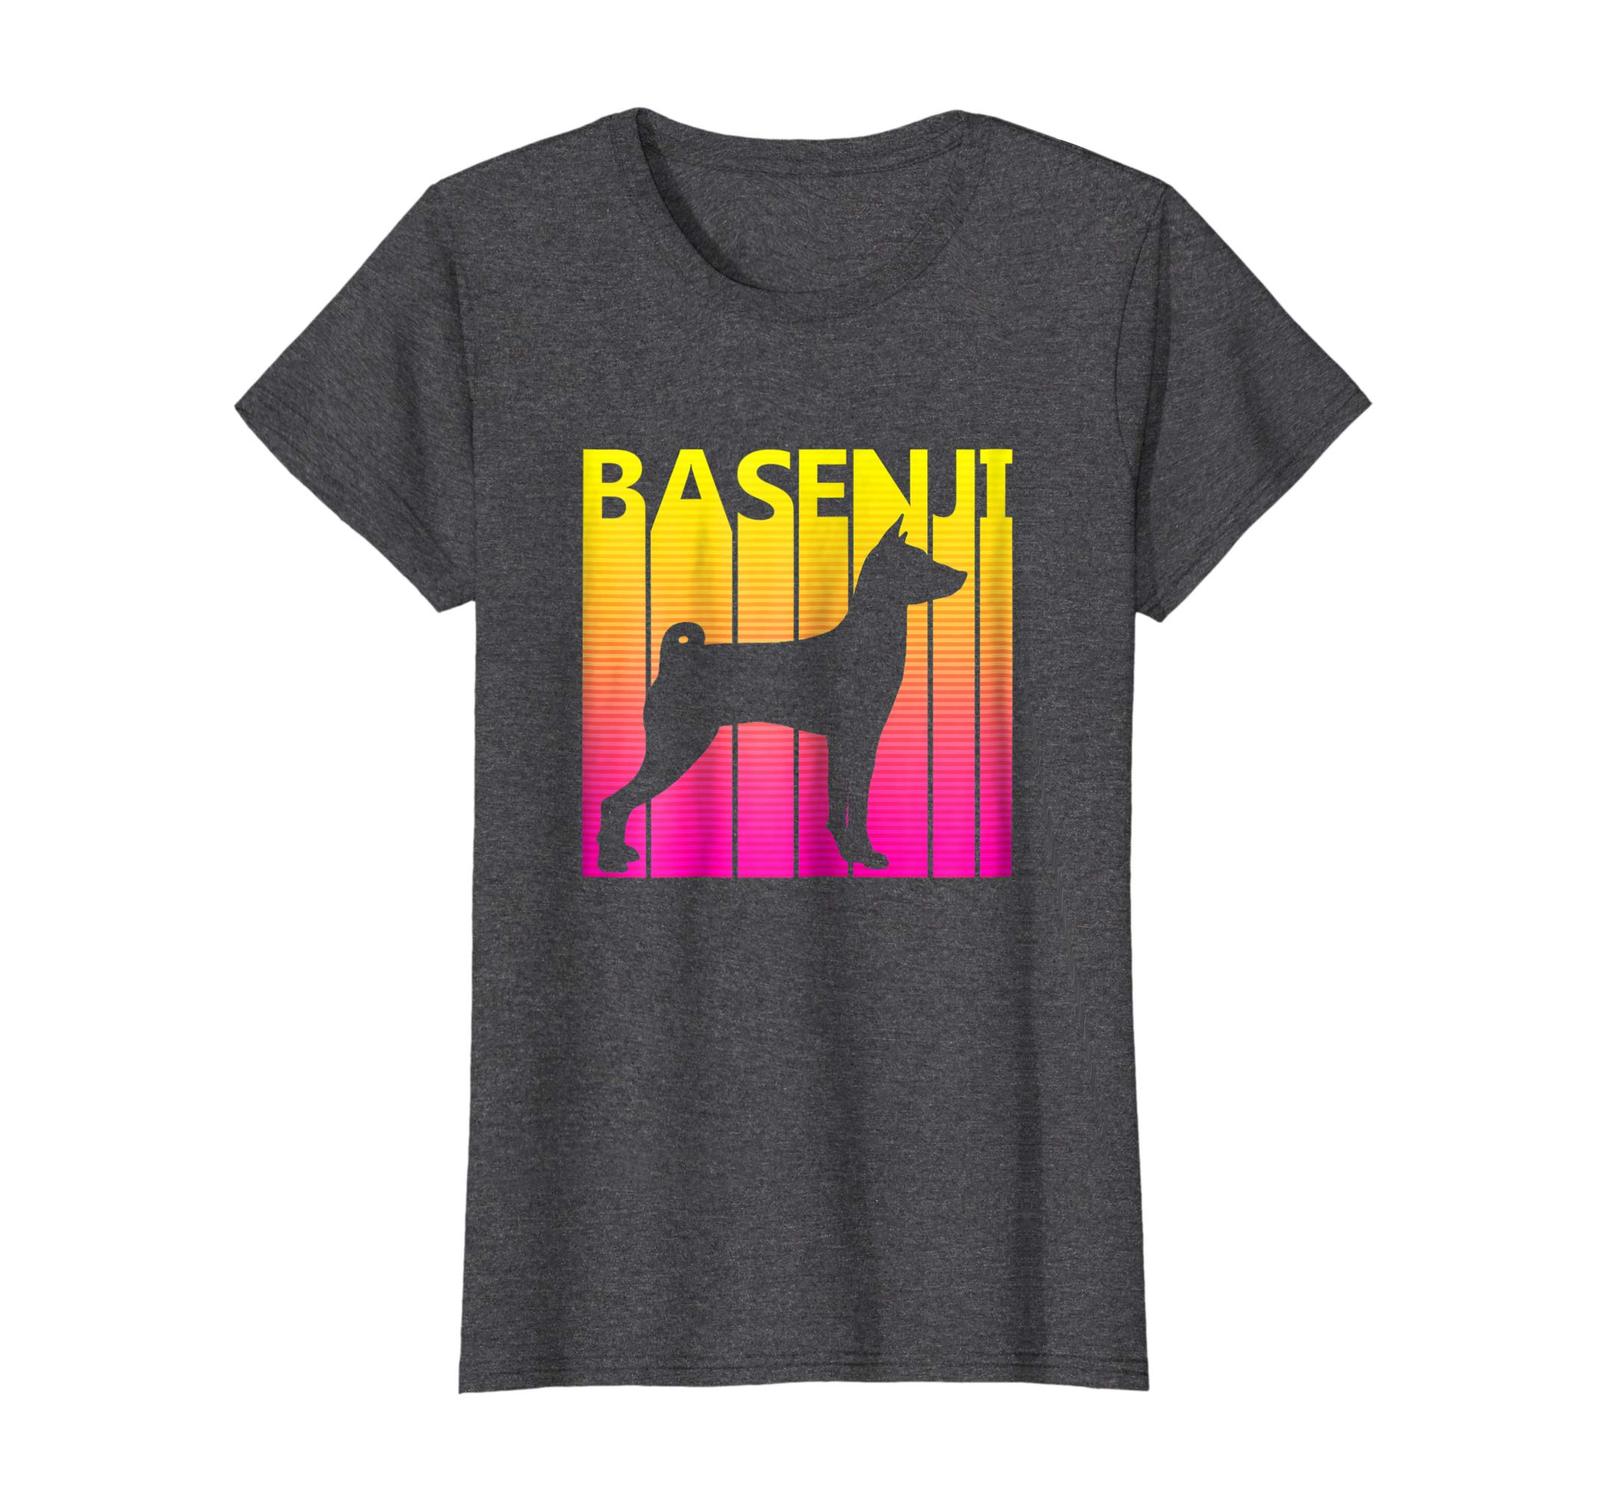 Dog Fashion - Vintage Basenji Dog T shirt Wowen